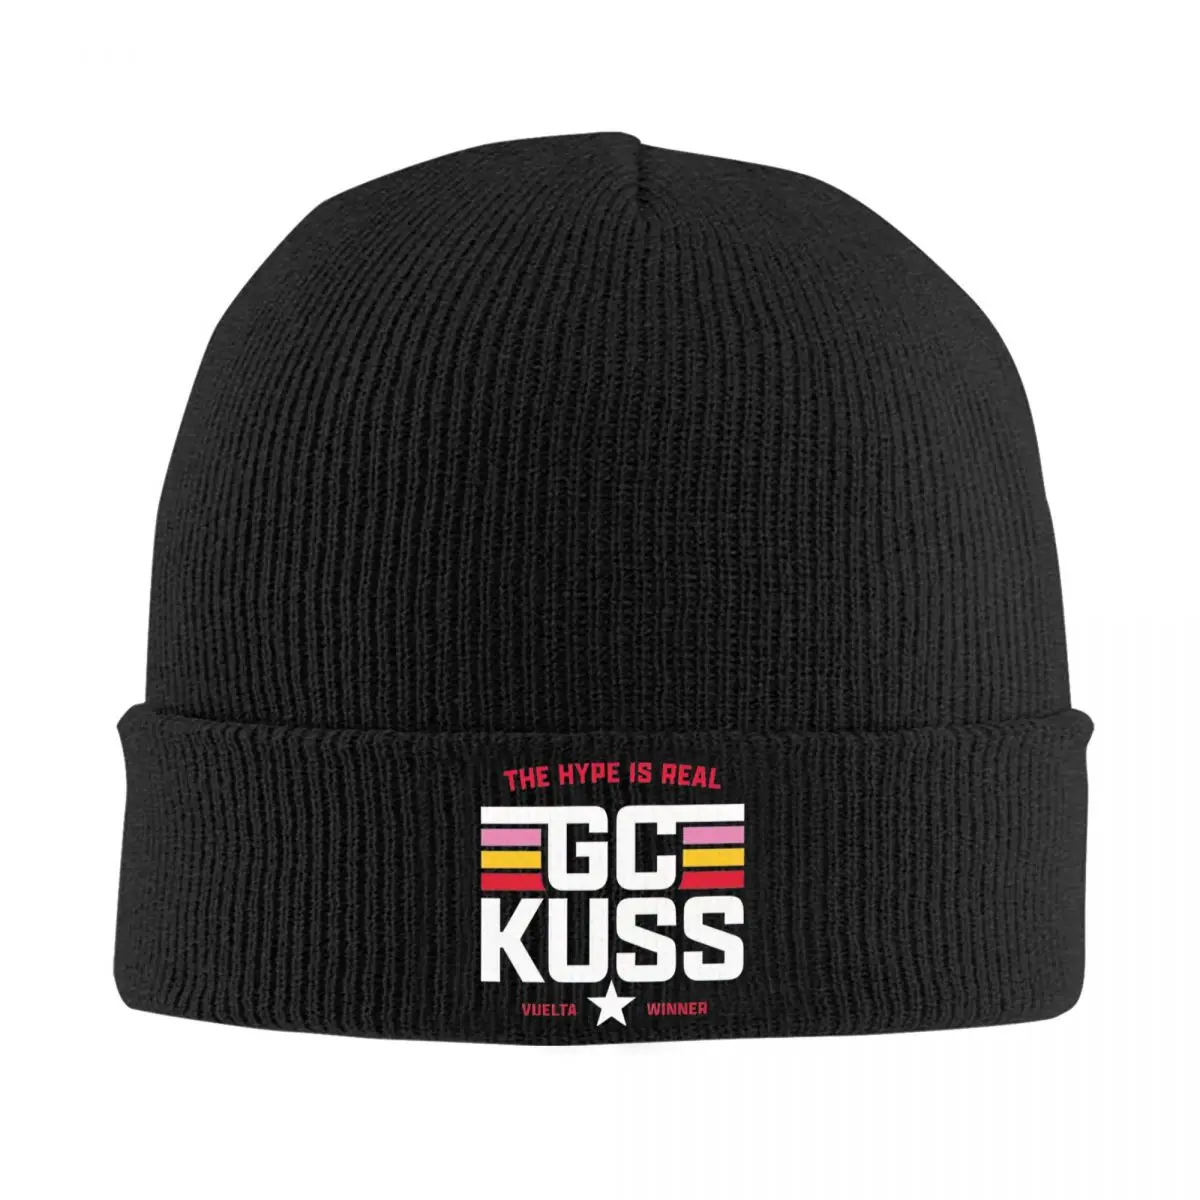 

Sepp Kuss GC Kuss Vuelta 2023 Knitted Hat Beanie Autumn Winter Hats Warm New Old Time Bike Cap Men Women